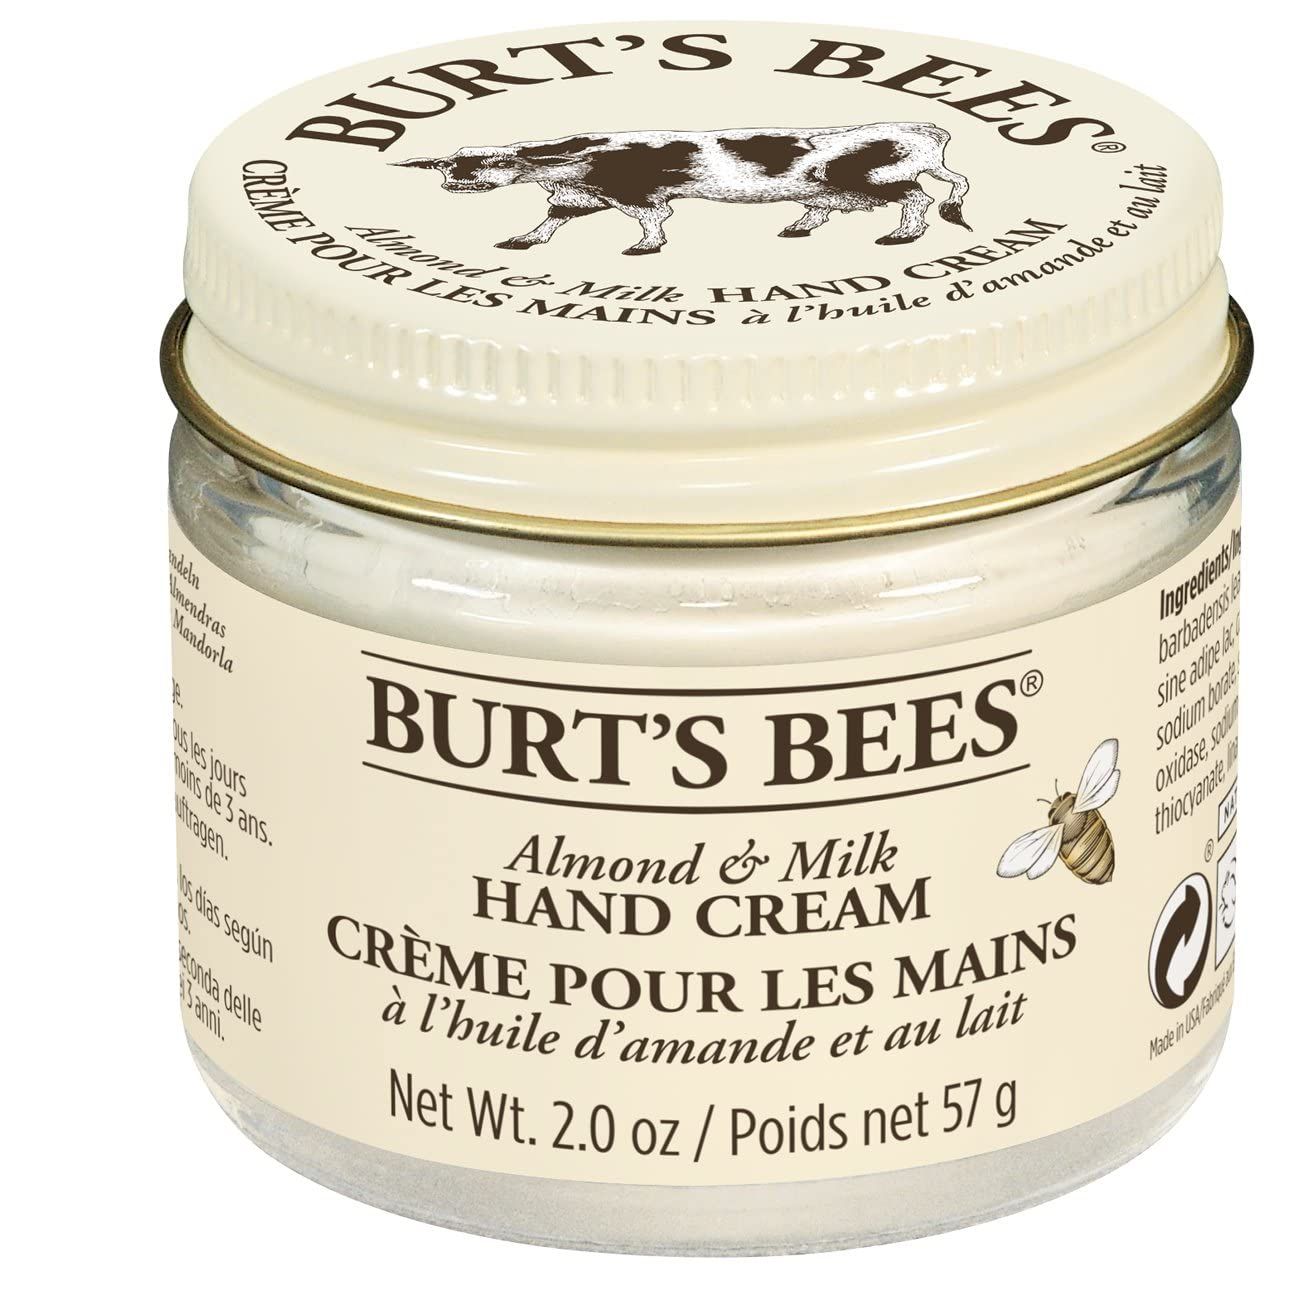 DISCBurt's Bees® Almond & Milk Hand Cream - 2 oz